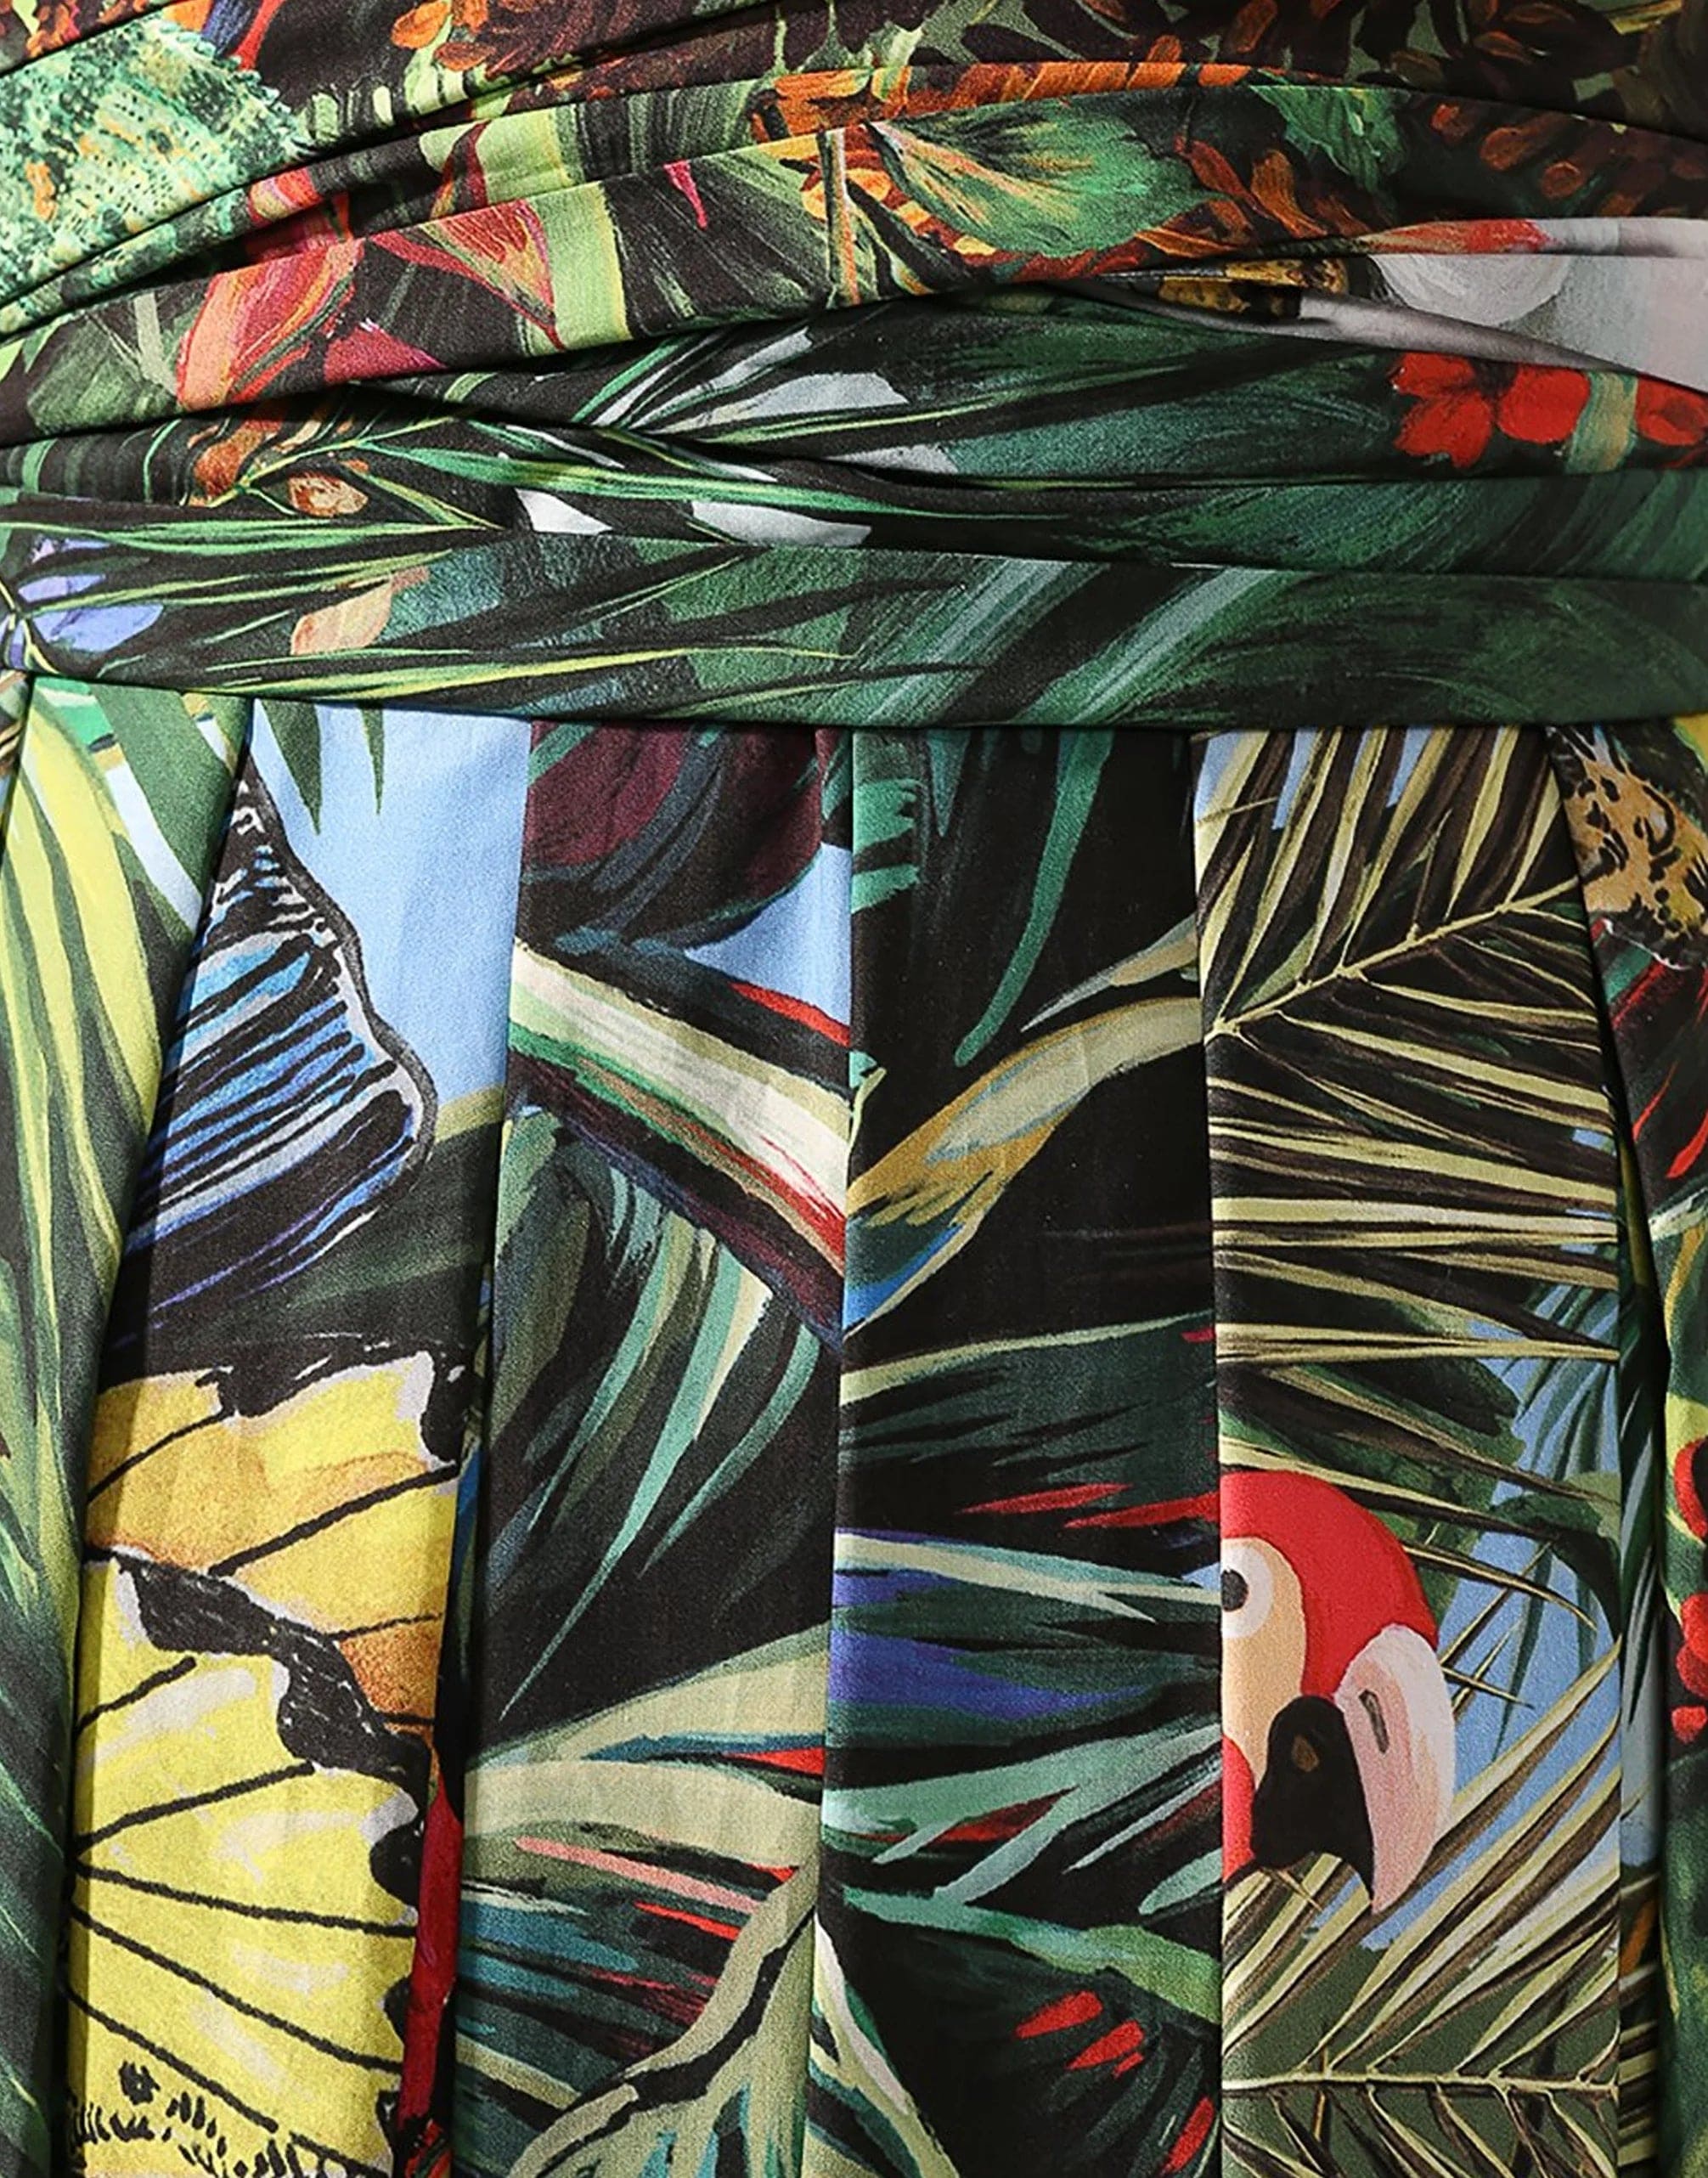 Jungle Print Strapless Maxi Dress